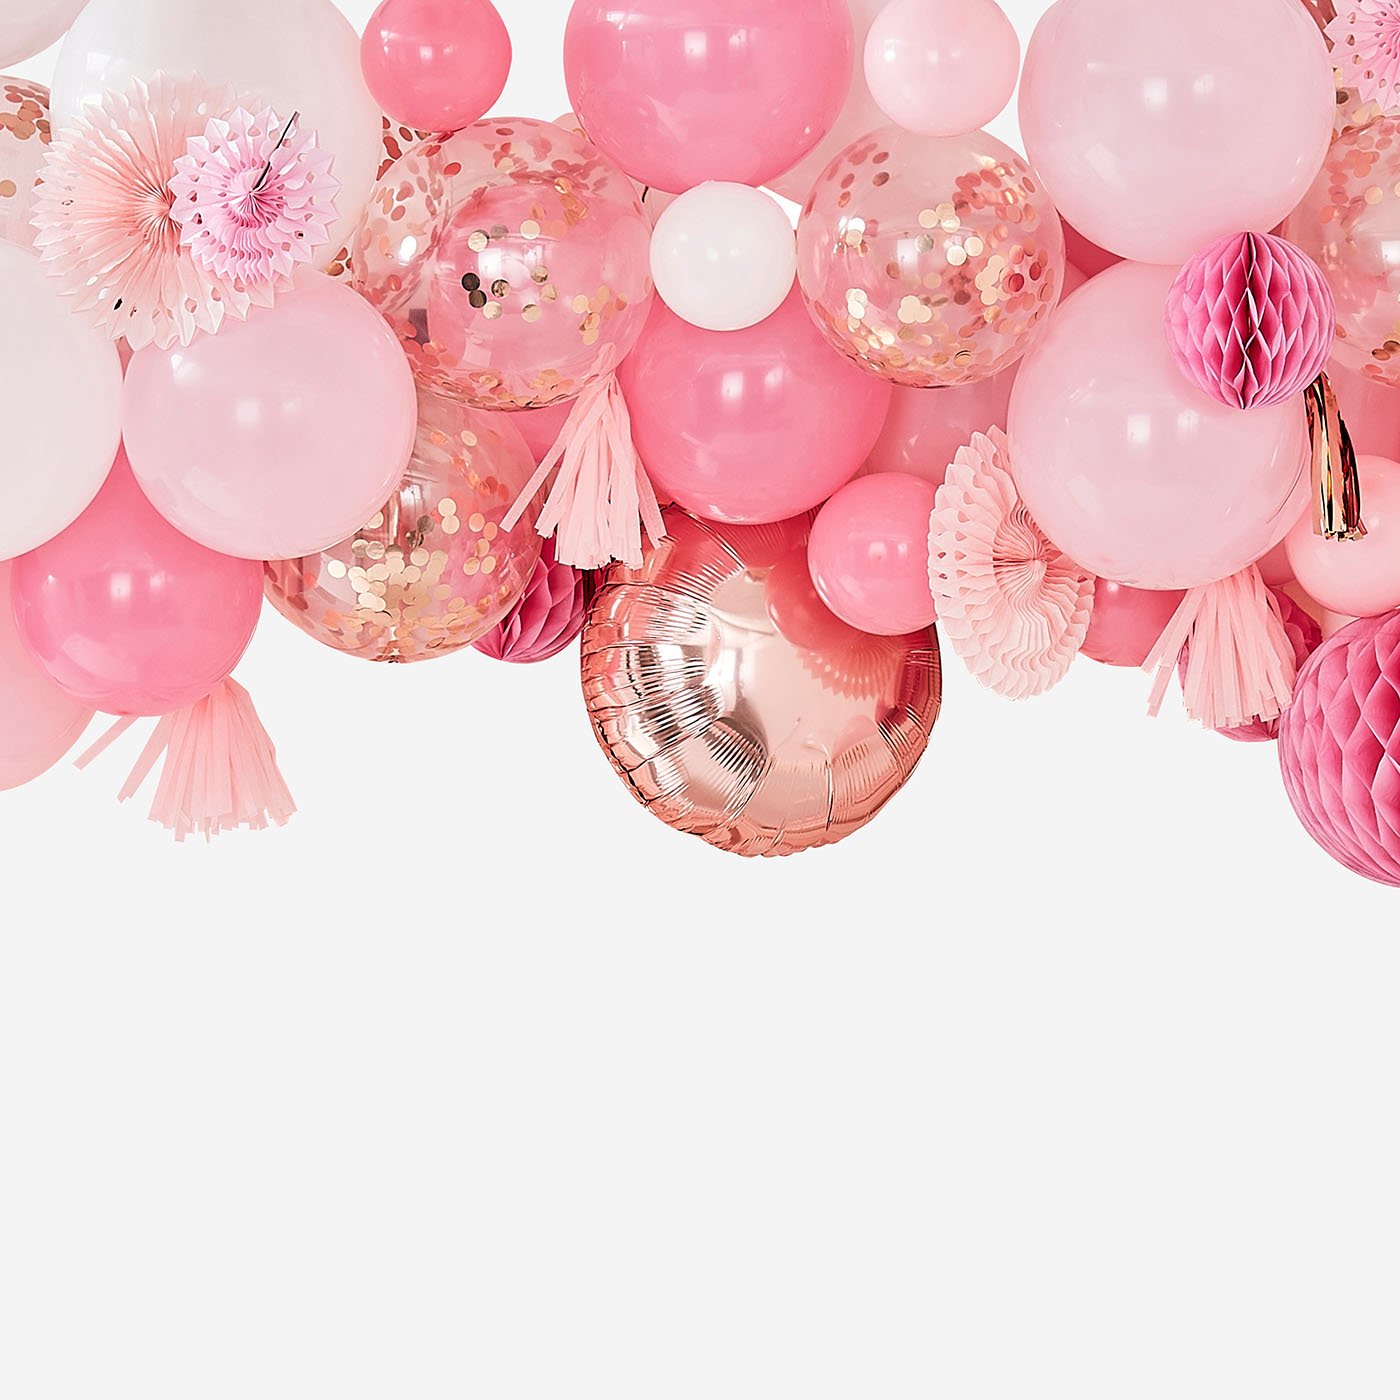 Zone De Photo Du ` S D'enfants Avec Des Bonbons Et Ballons Décorations Pour  Une Fête D'anniversaire De Girlâ€™s D'un an Image stock - Image du gâteau,  rose: 112556375